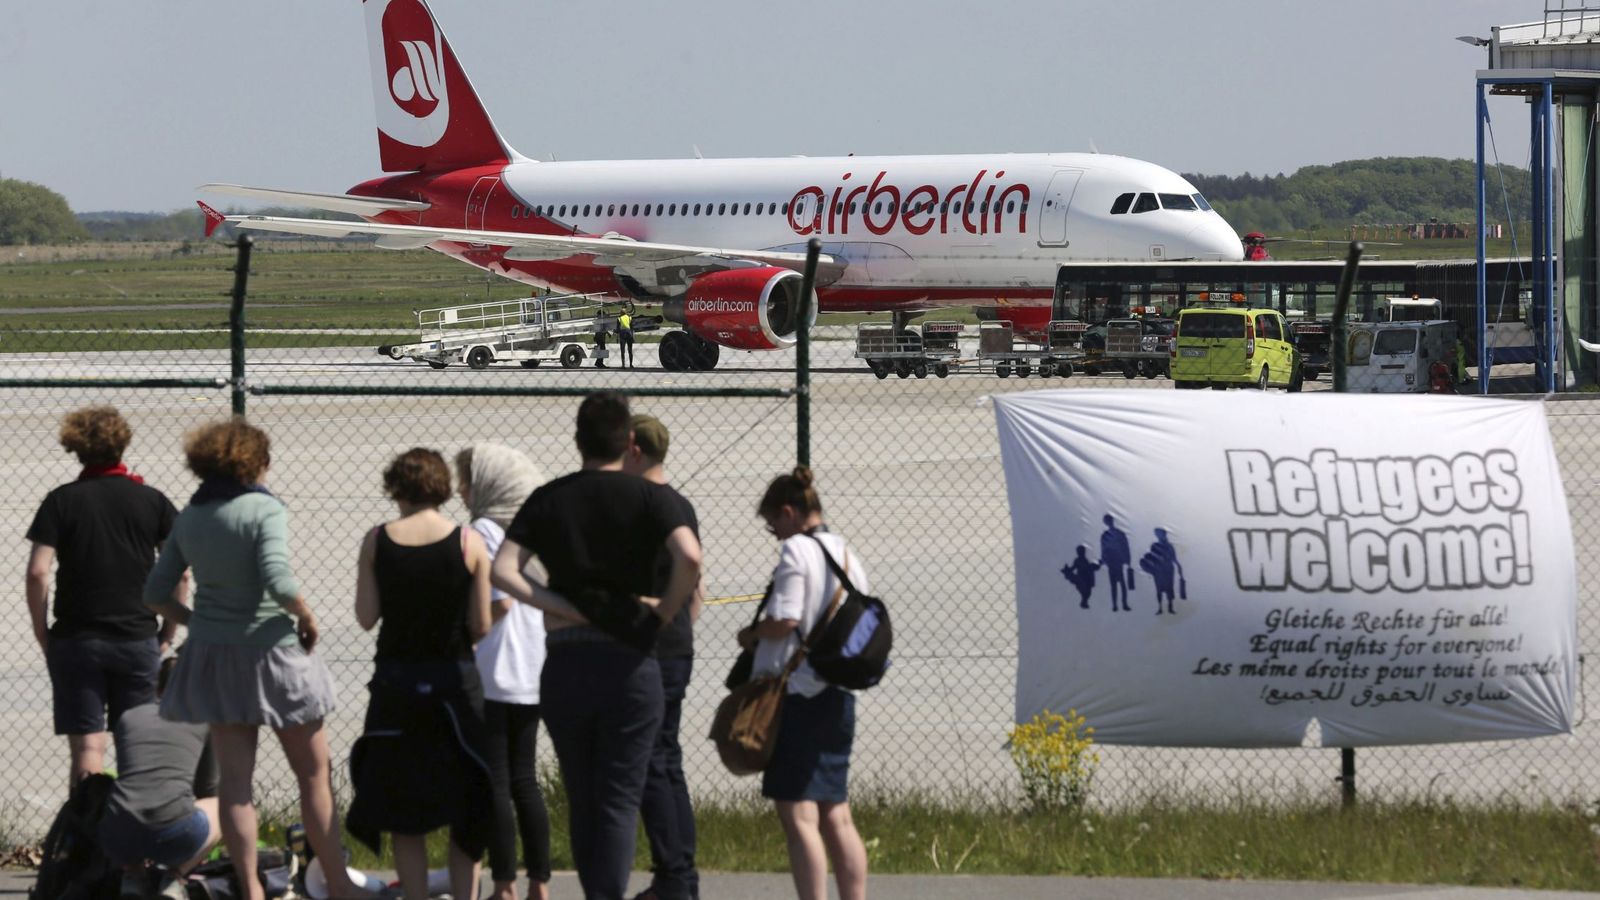 Foto: EFE|Integrantes de una ONG alemana observan un avión en el aeropuerto de Rostcok-Laage en el que cerca de 100 refugiados serán deportados a países como Albania o Serbia